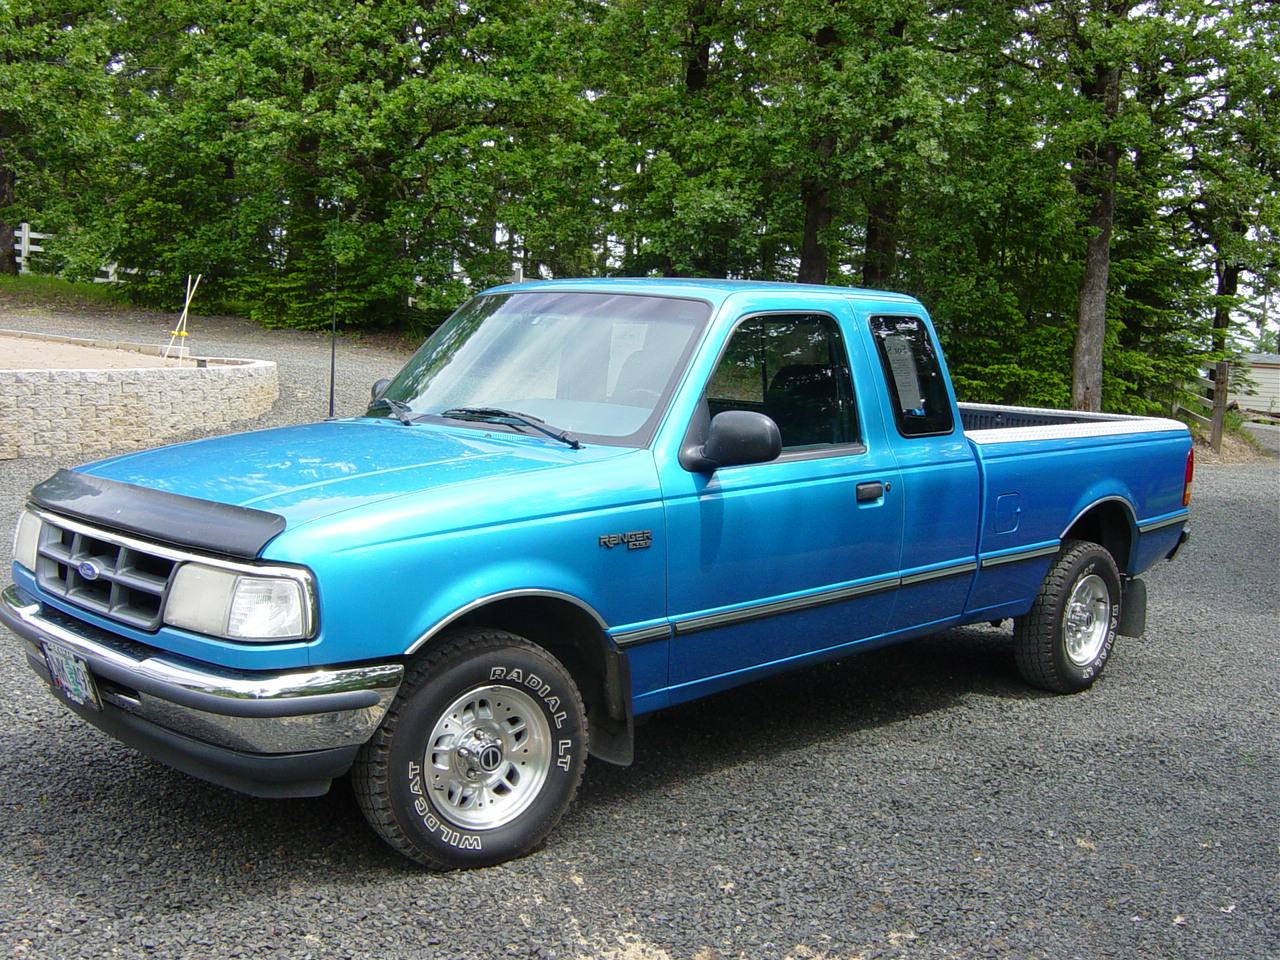 1994 Ford ranger extended cab specs #9